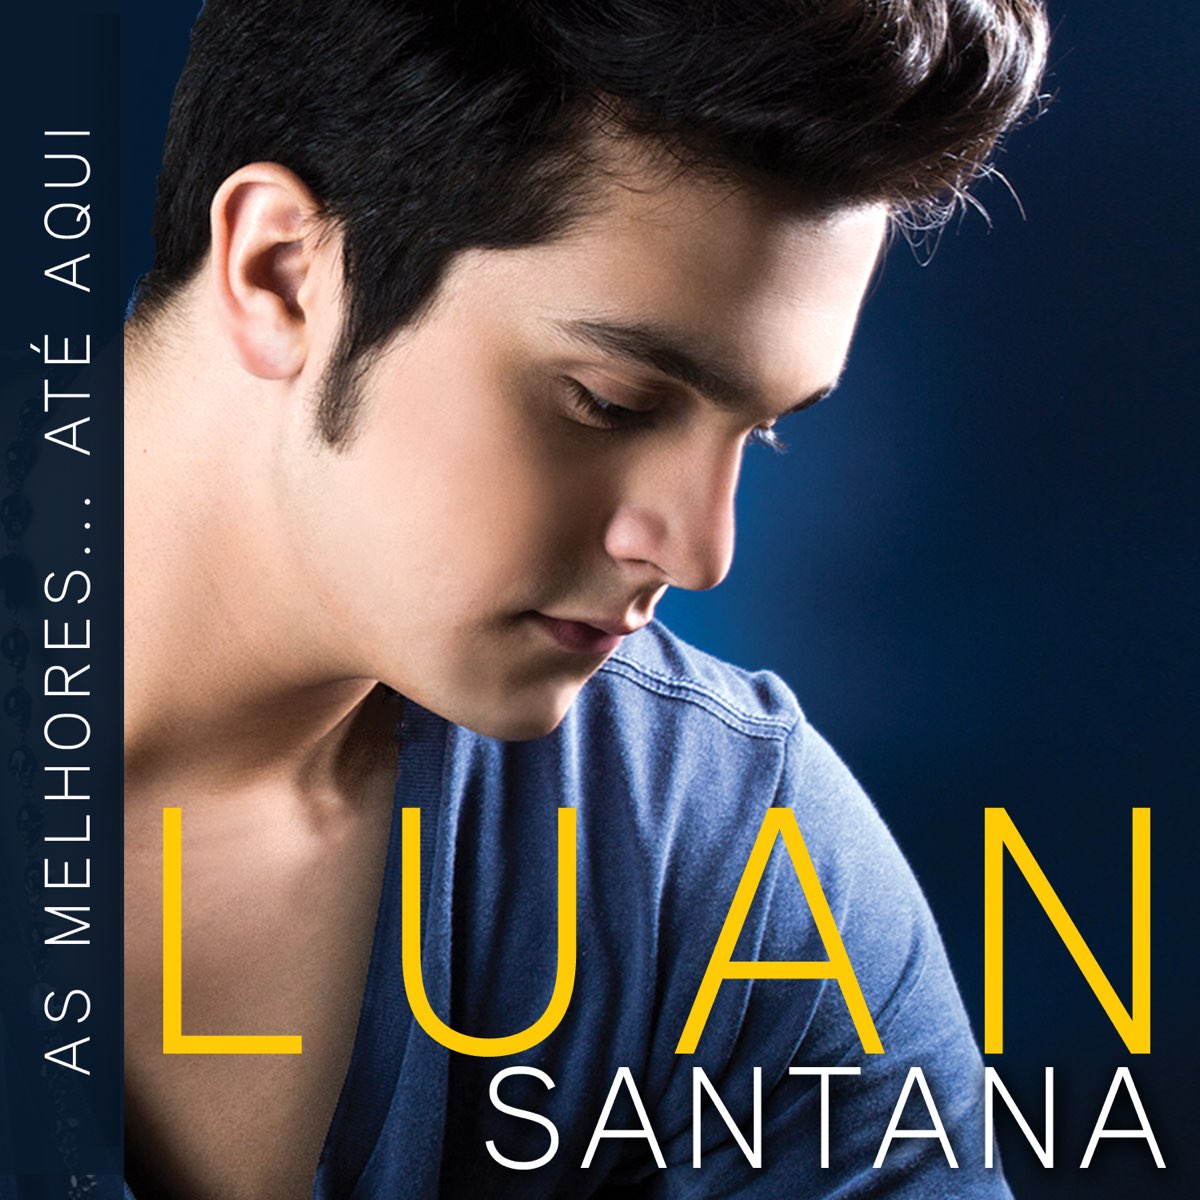 ⭐ Jogo do Amor (É Mais Difícil Que Pensei) - Luan Santana (Karaokê Version)  (Cover) 